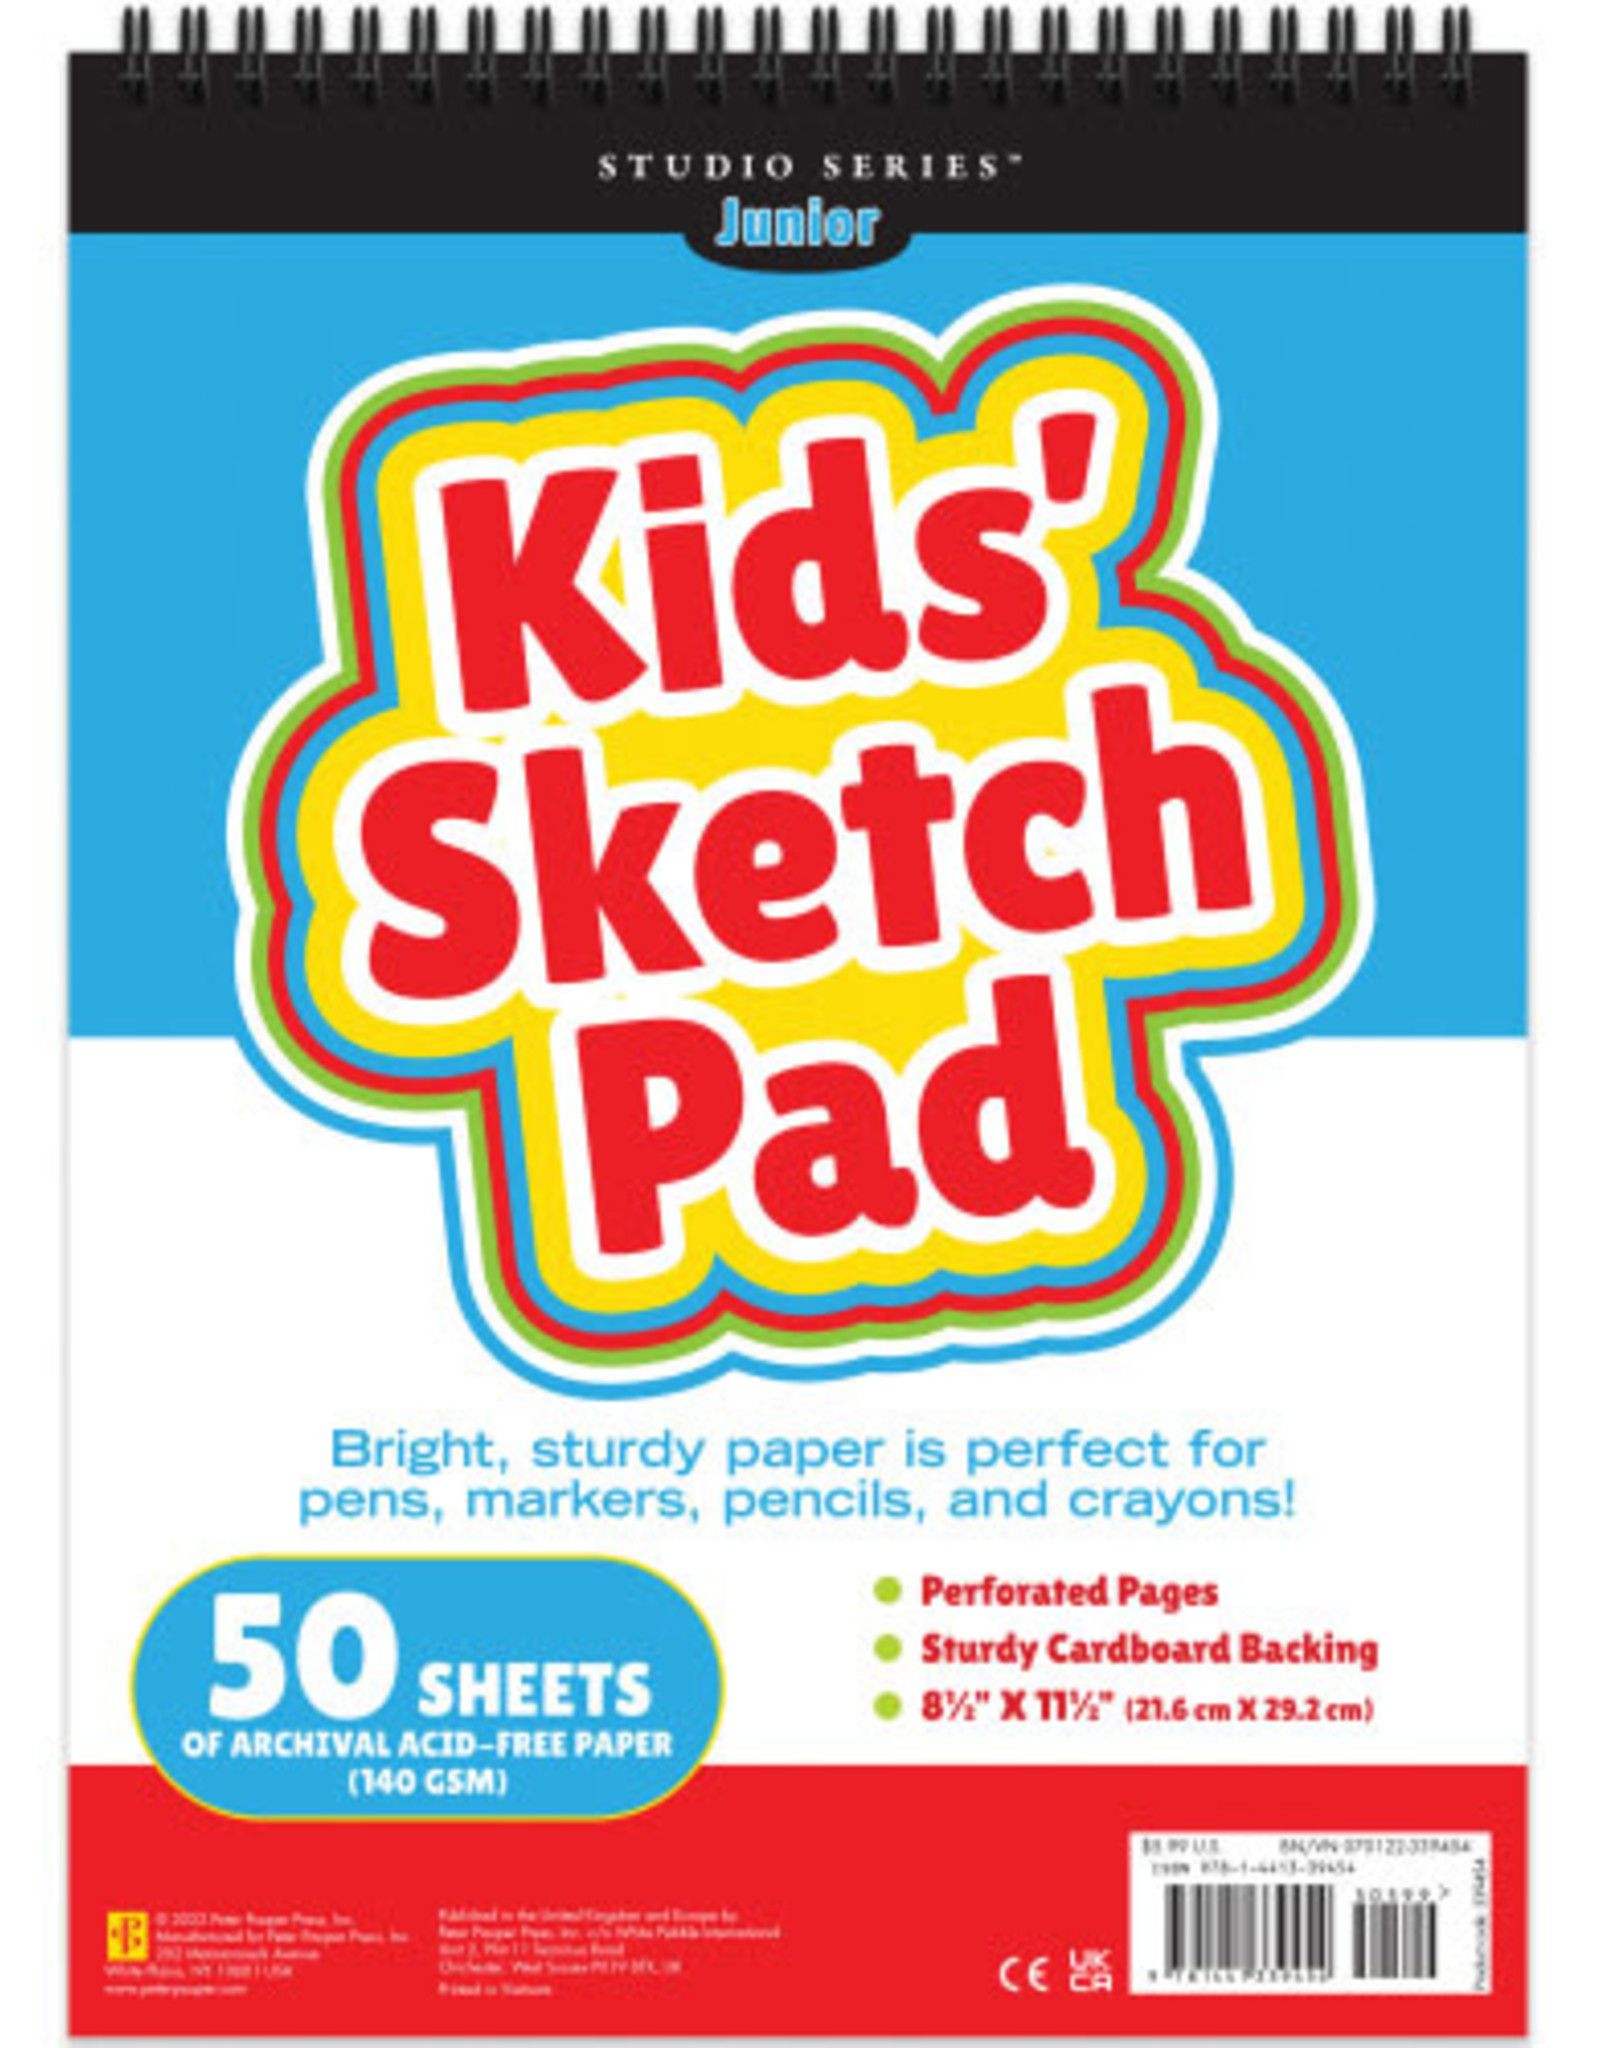 Kids' Sketch Pad – Peter Pauper Press